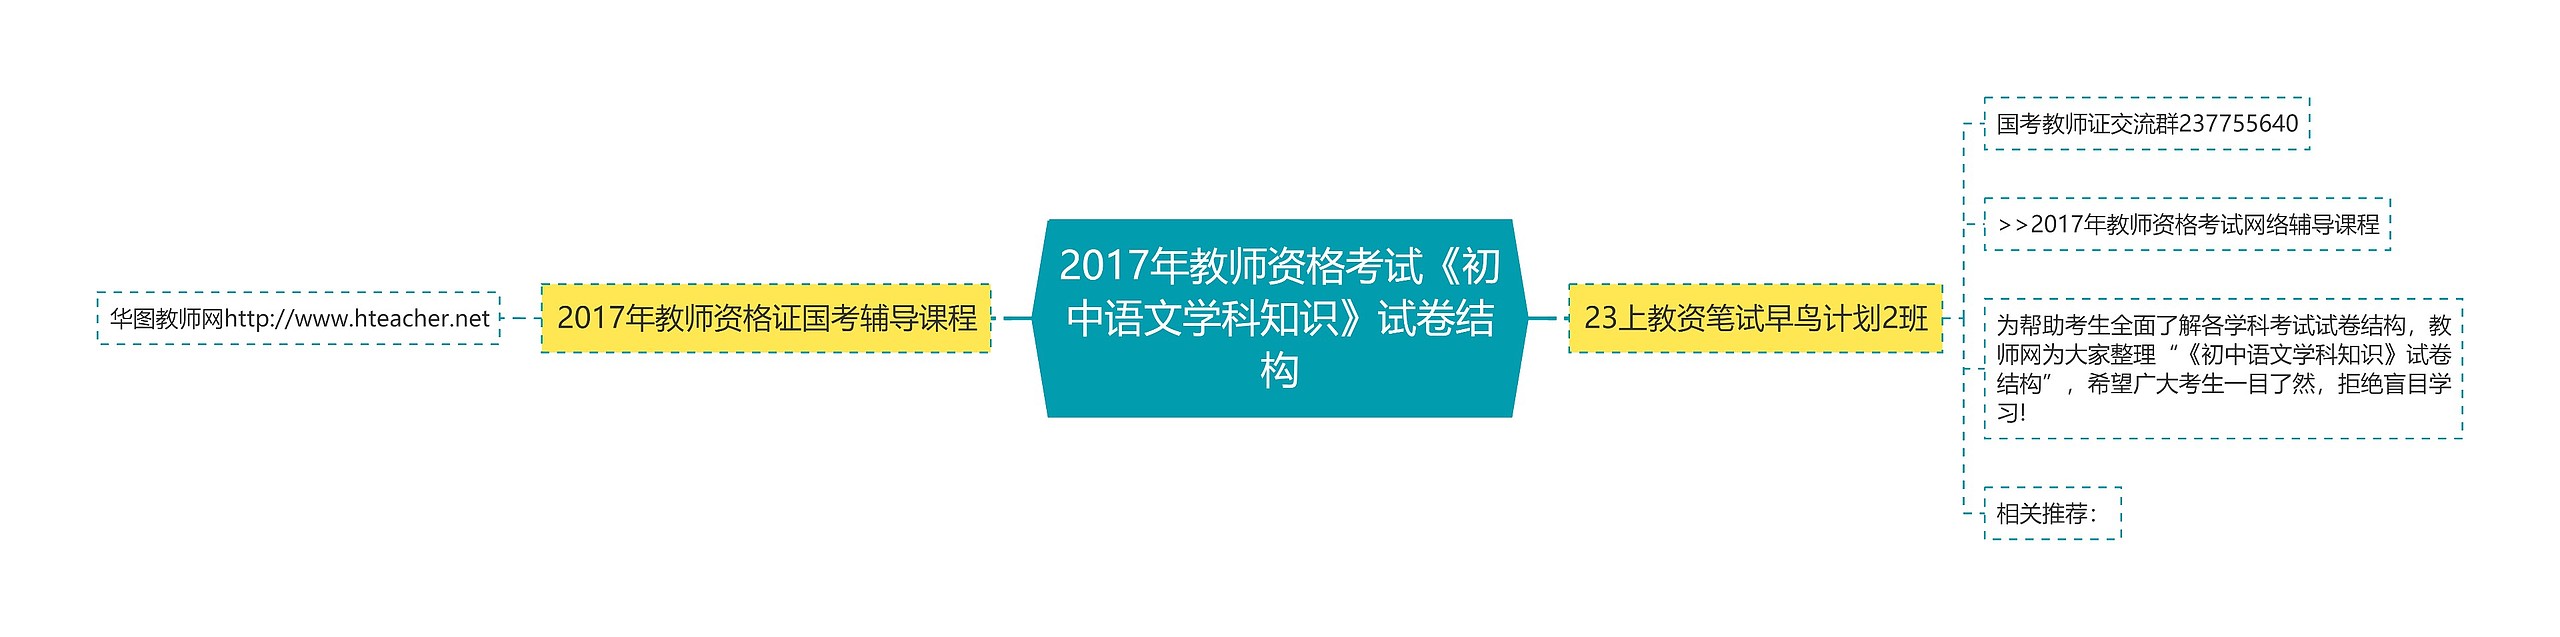 2017年教师资格考试《初中语文学科知识》试卷结构